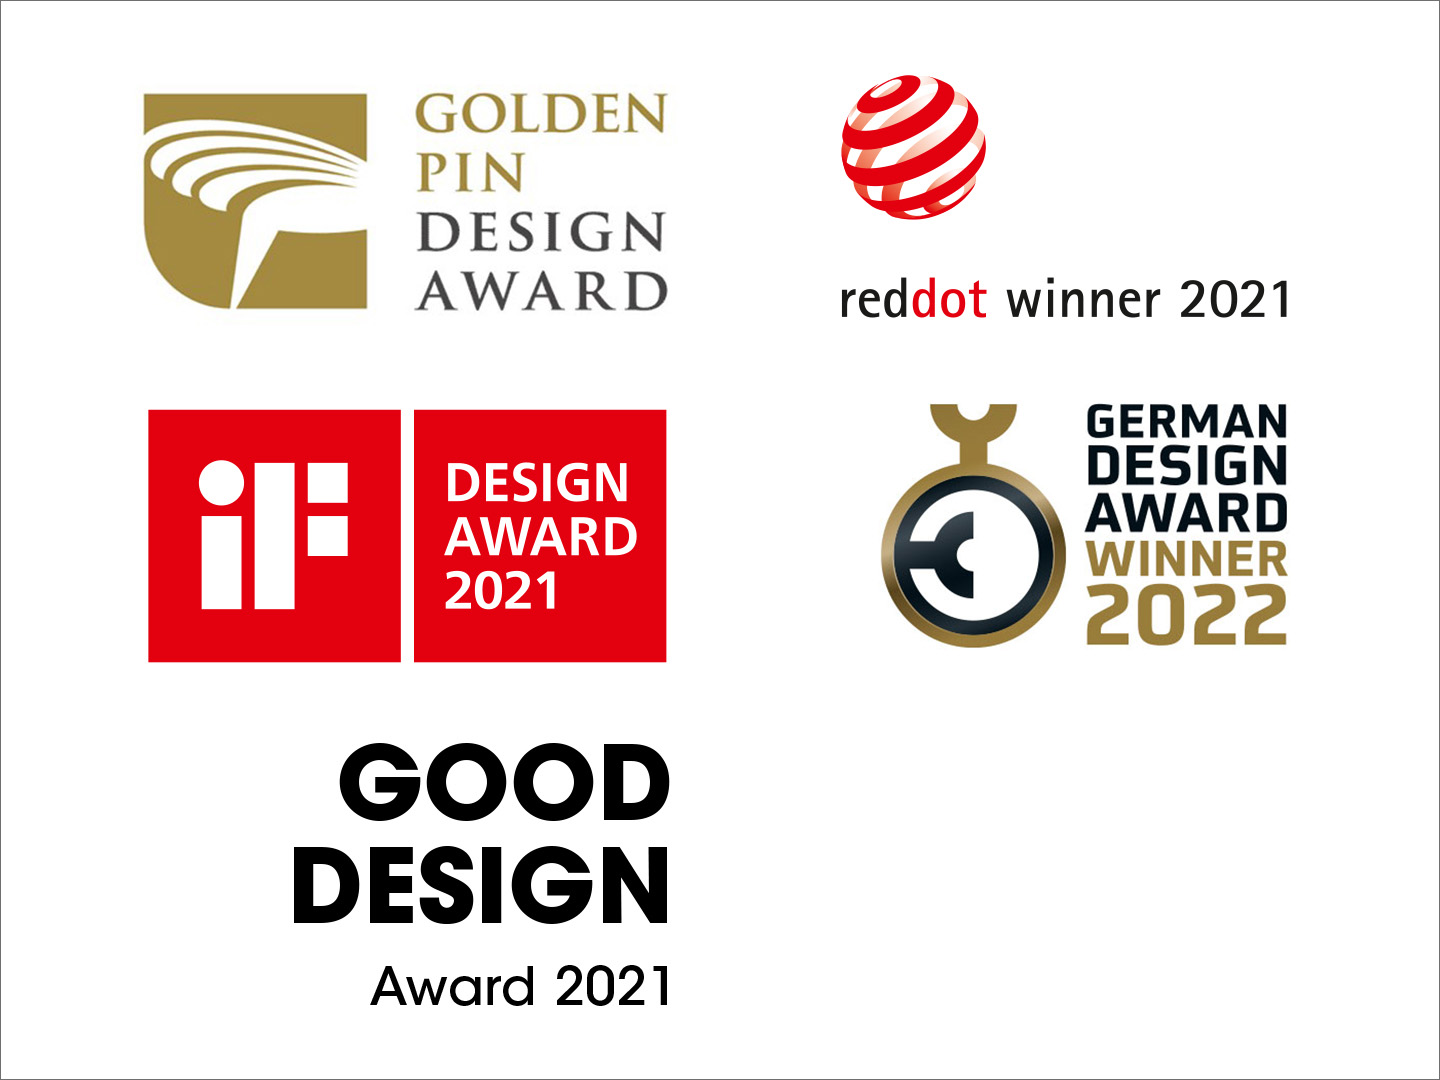 Design award logos